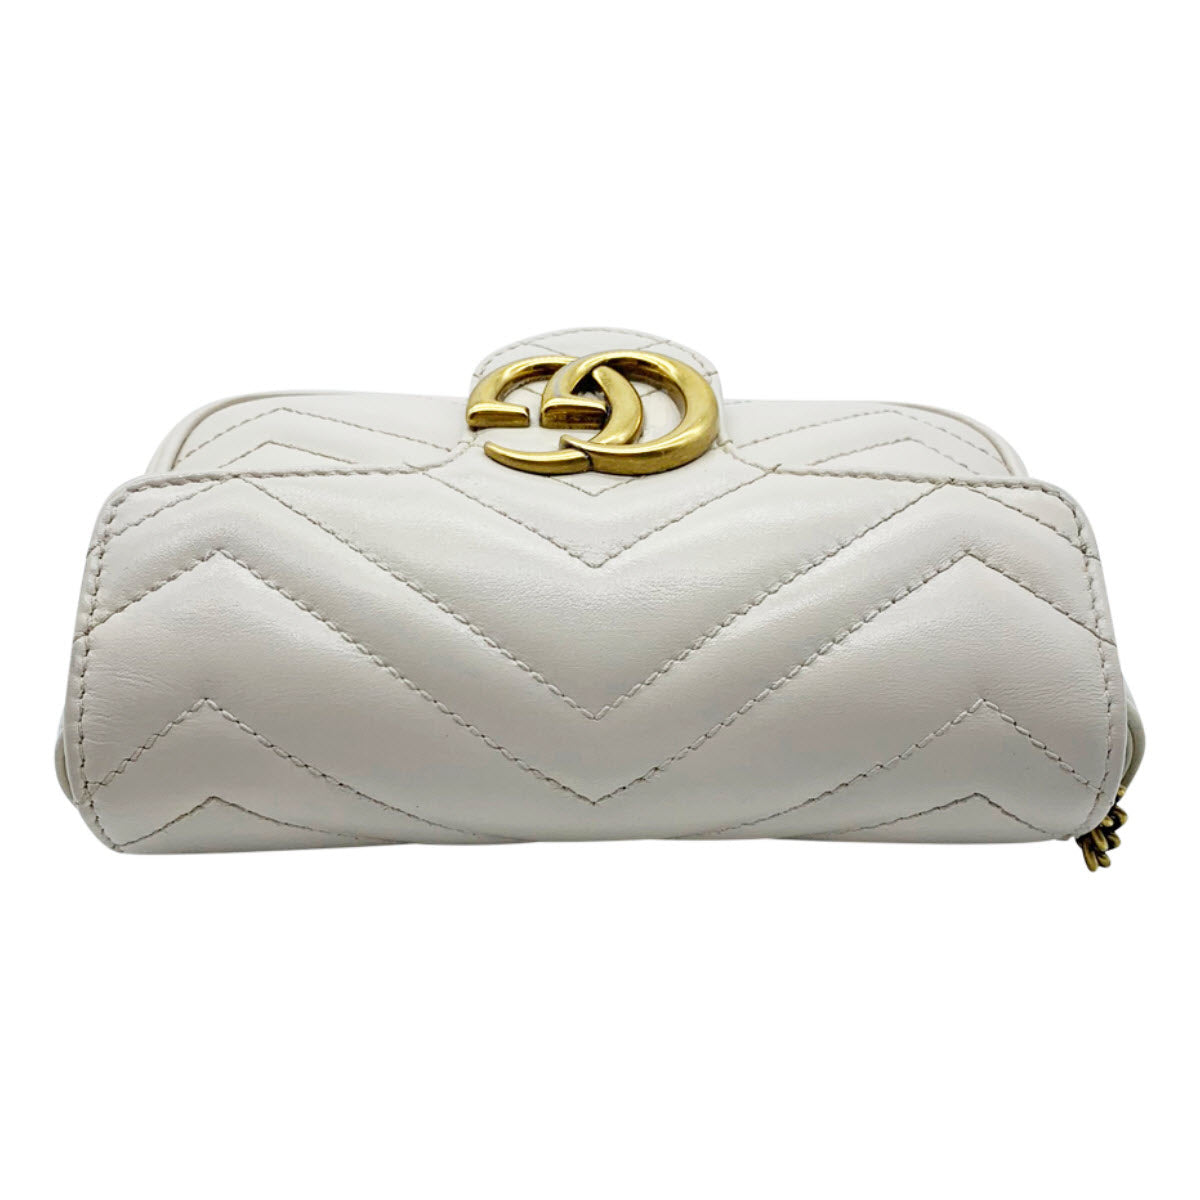 Gucci GG Marmont Supermini shoulder bag - ShopStyle